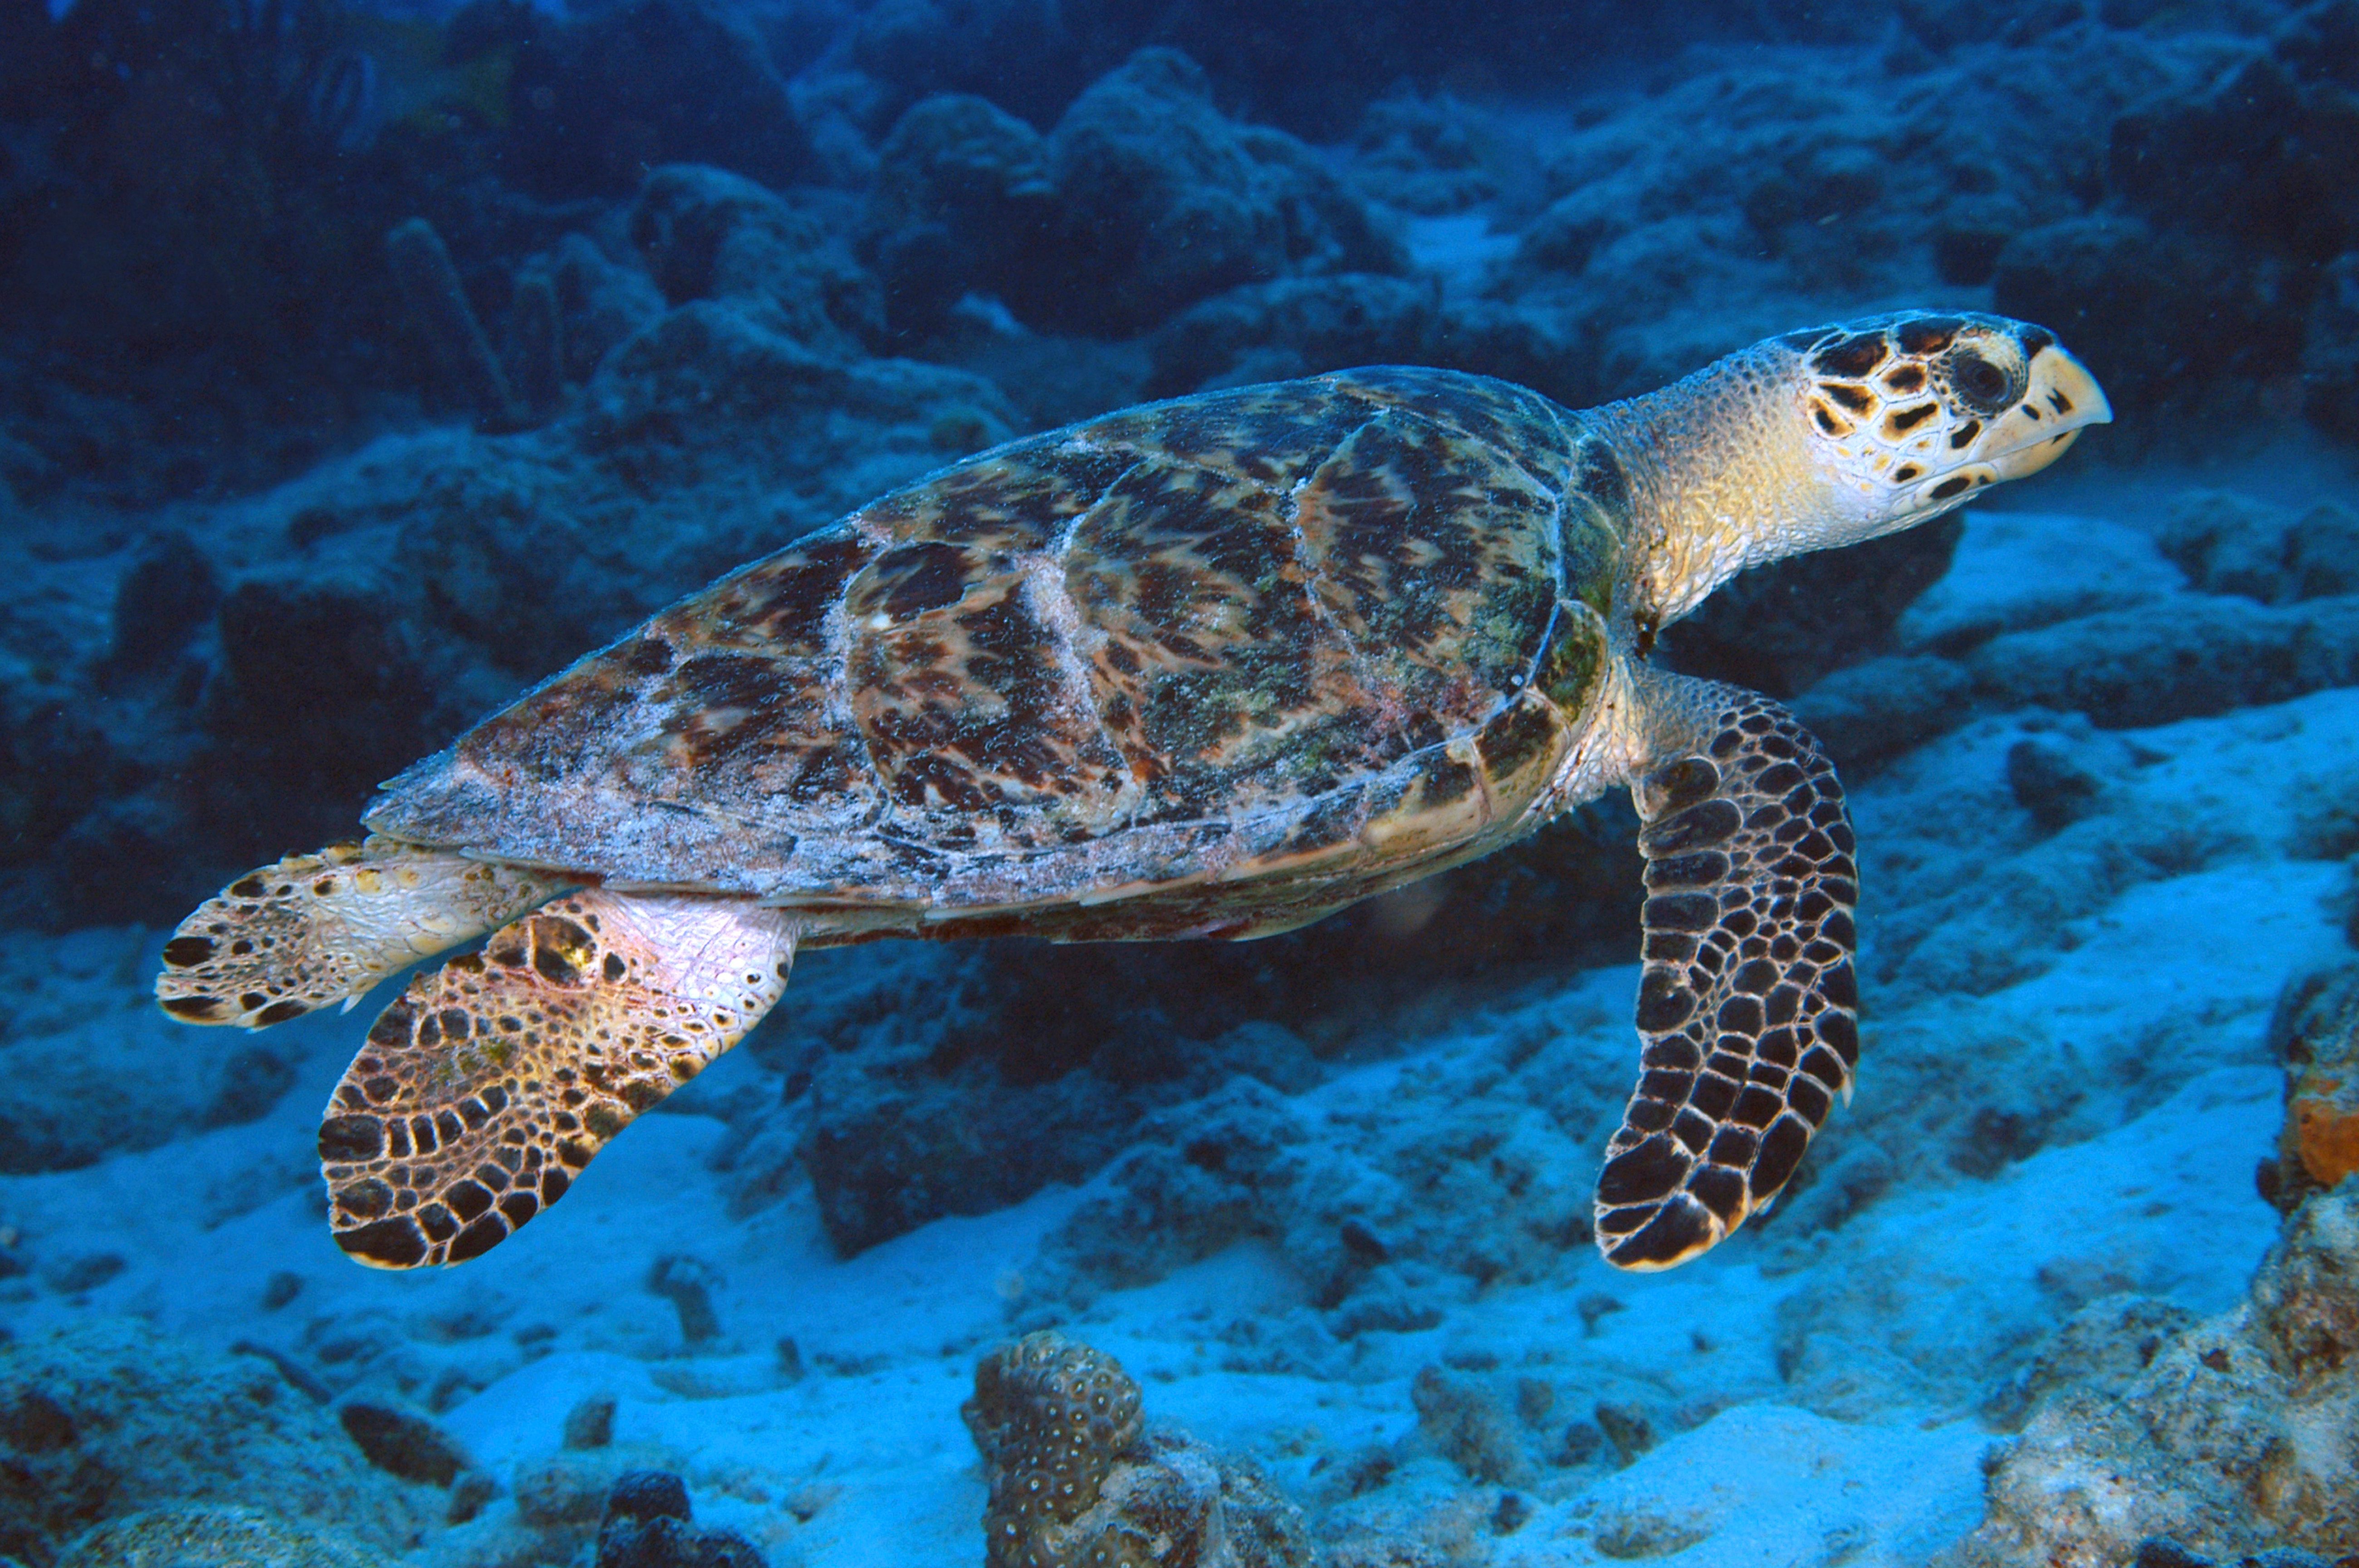 수영 대모 바다 거북, Eretmochelys imbricata 돌출 된 위턱은 매의 부리와 유사하며이 거북에 Curacao, 네덜란드 령 앤 틸리 스 디지털 사진 (가로)을 부여합니다.